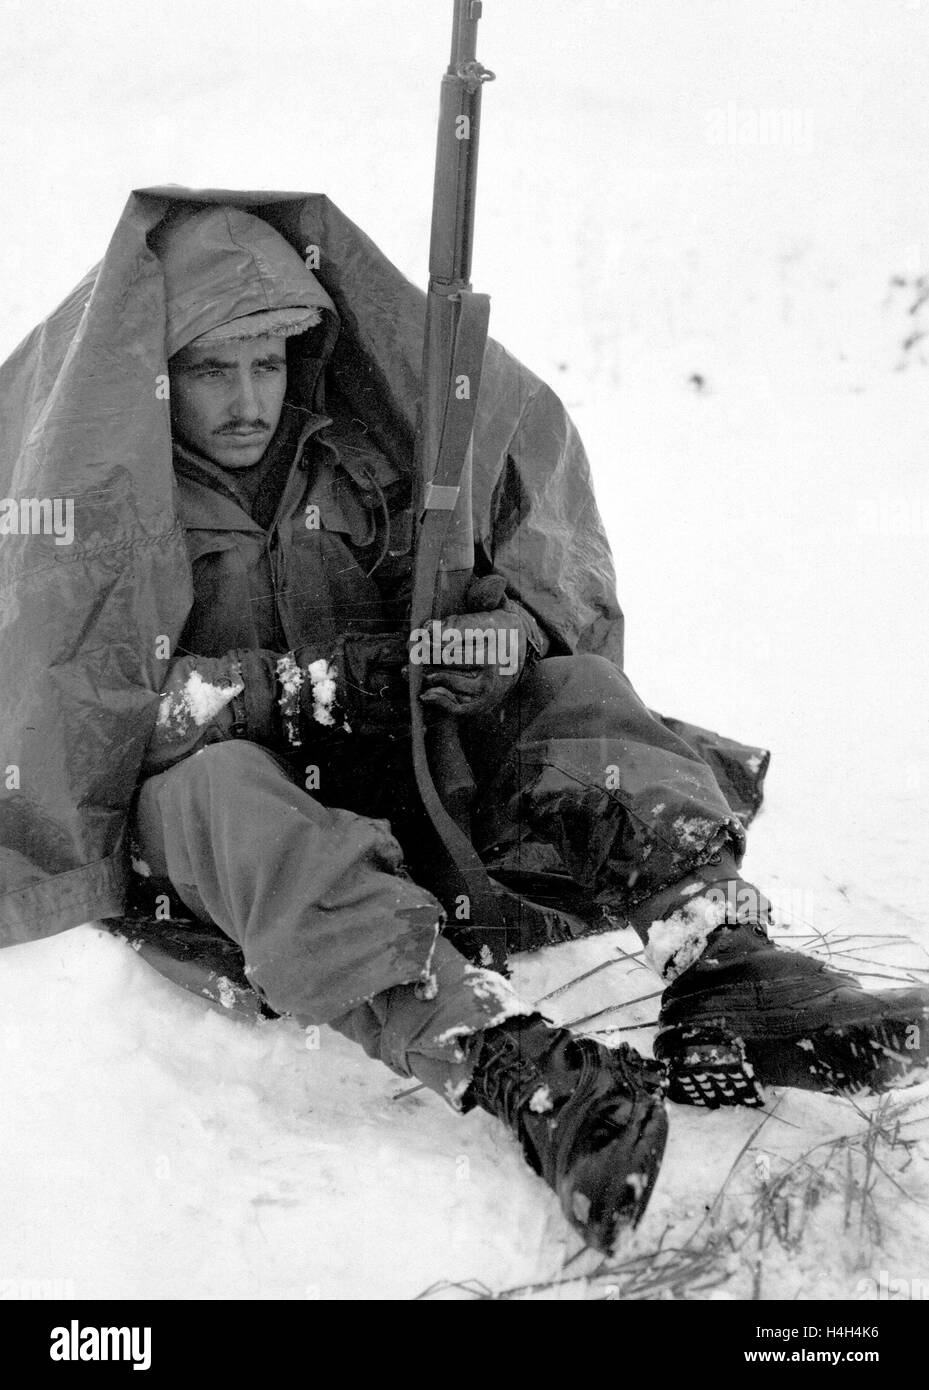 US-Soldaten Pfc. Preston McKnight, mit der 19. Infanterie-Regiment, nutzt seine Poncho um Schutz vor den beißenden Wind und Kälte während des Koreakrieges 10. Januar 1951 in Yoju, Korea zu bekommen. Stockfoto